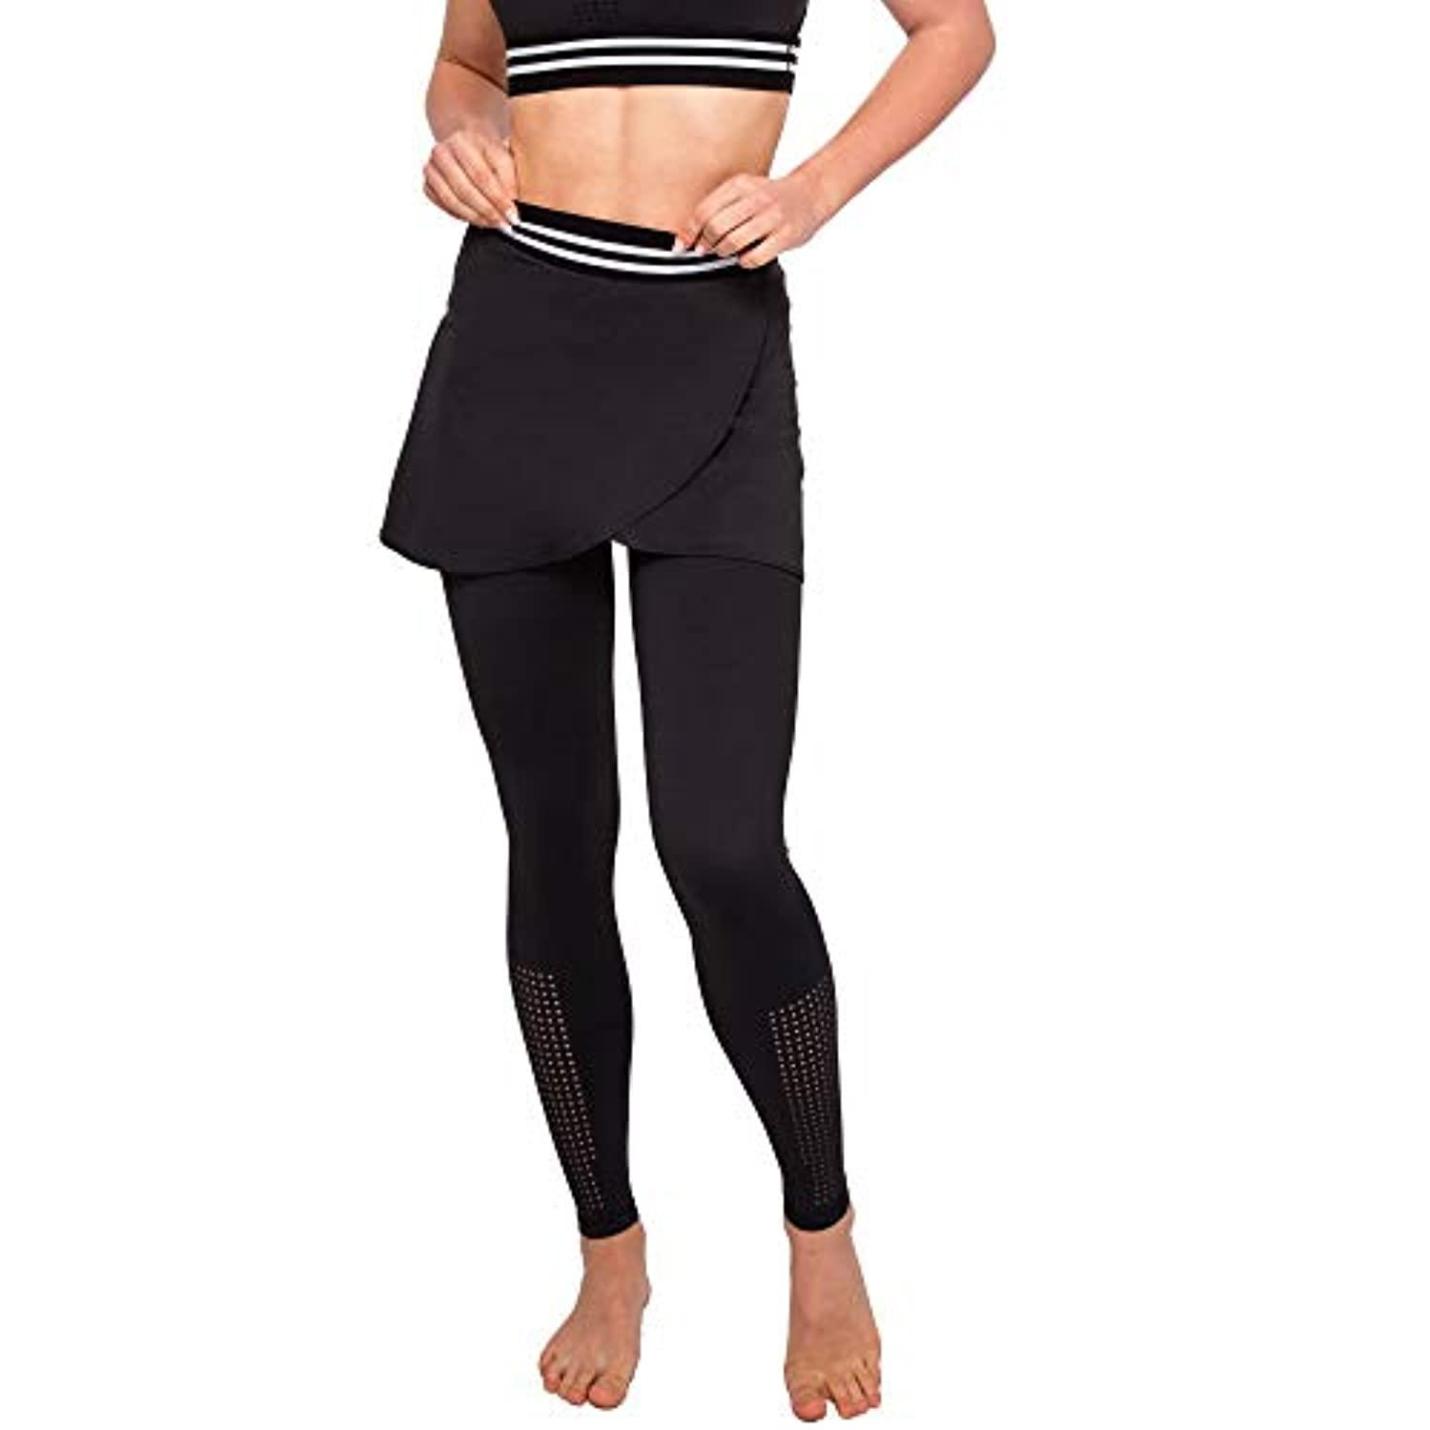 Dameslegging met rok - broek voor yoga, pilates, fitness, sport L